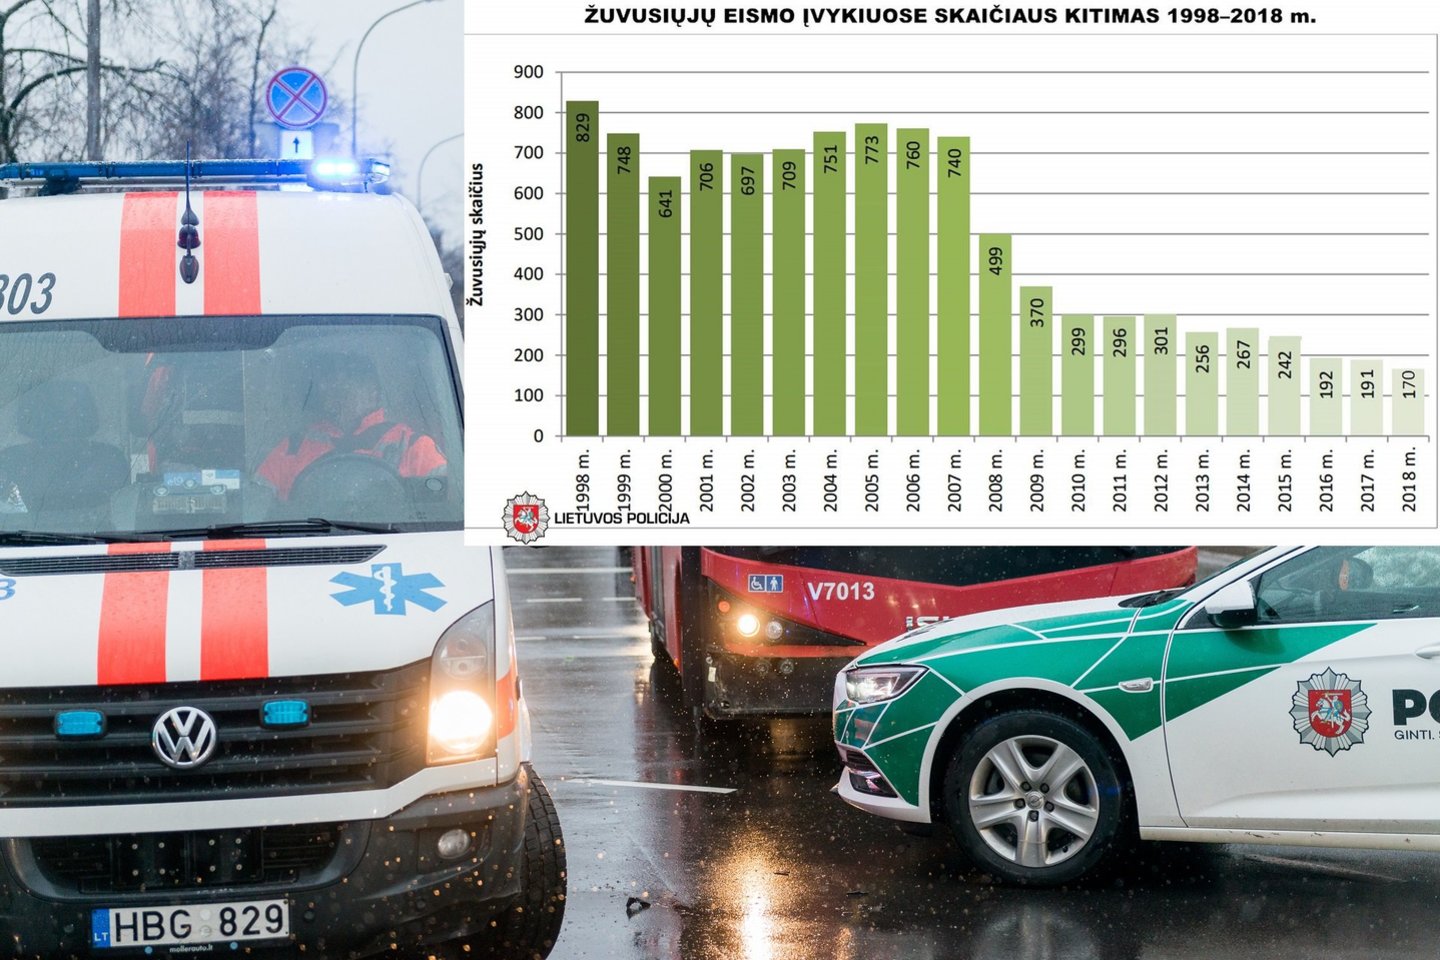  Per 20 metų žuvusiųjų Lietuvos keliuose akivaizdžiai sumažėjo.<br> J.stacevičiaus ir Lietuvos policijos nuotr.